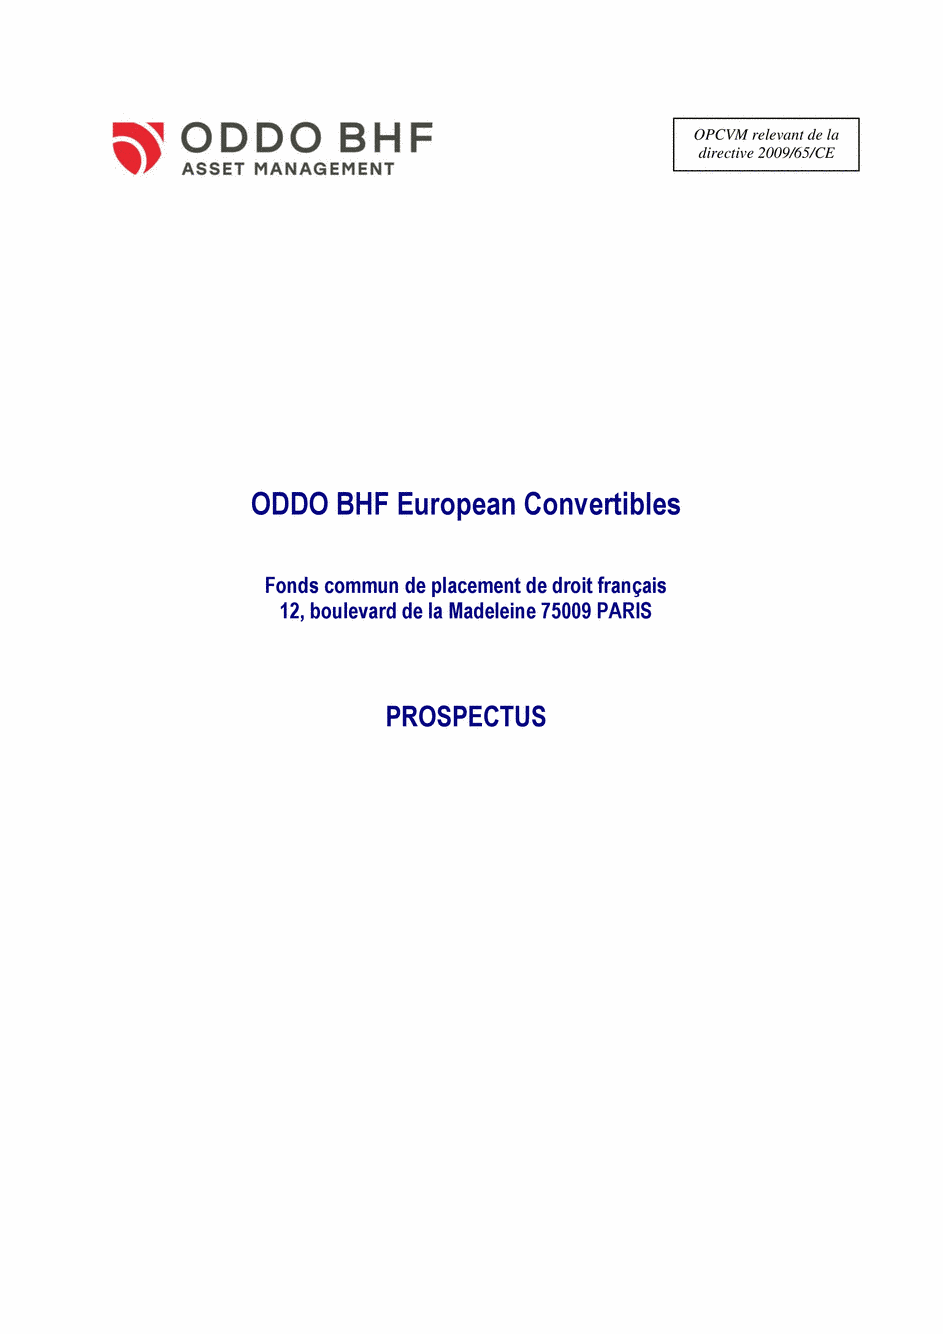 Prospectus ODDO BHF EUROPEAN CONVERTIBLES CR-EUR - 15/07/2020 - Français